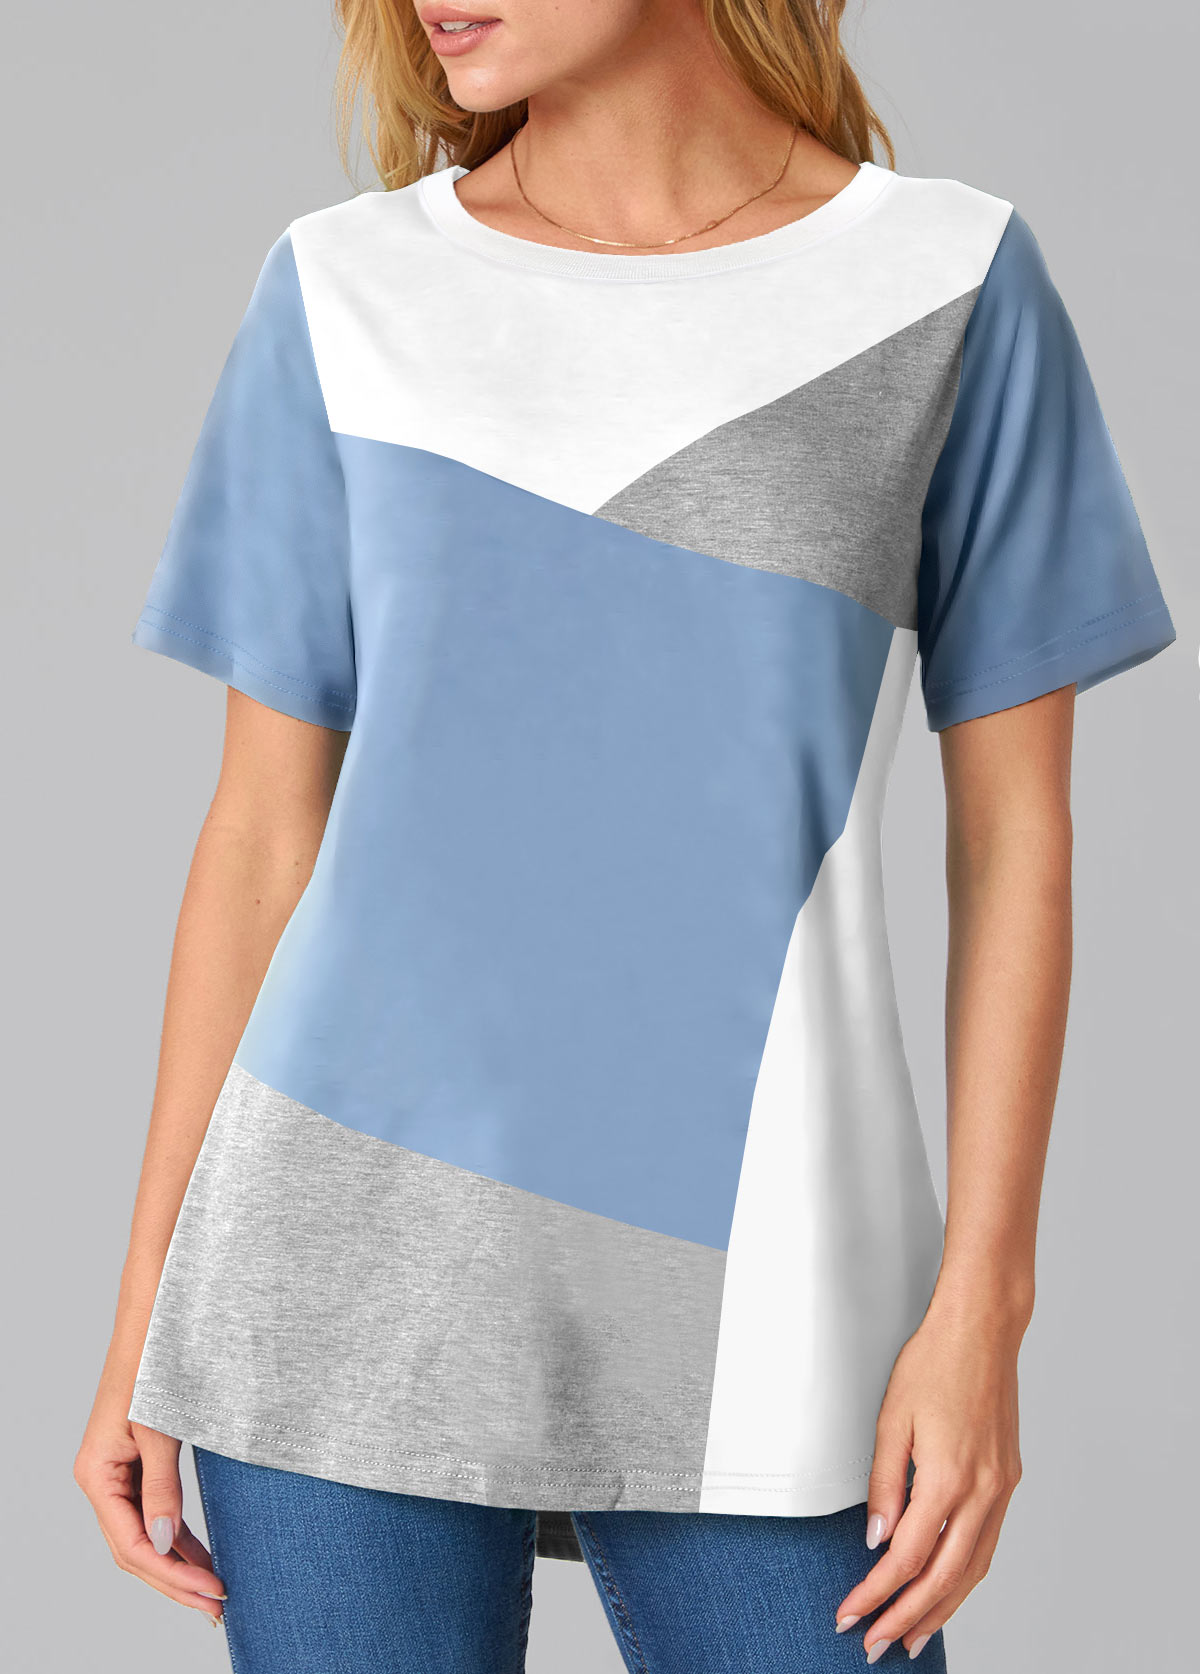 Contrast Grey Marl Round Neck T Shirt | modlily.com - USD 25.98